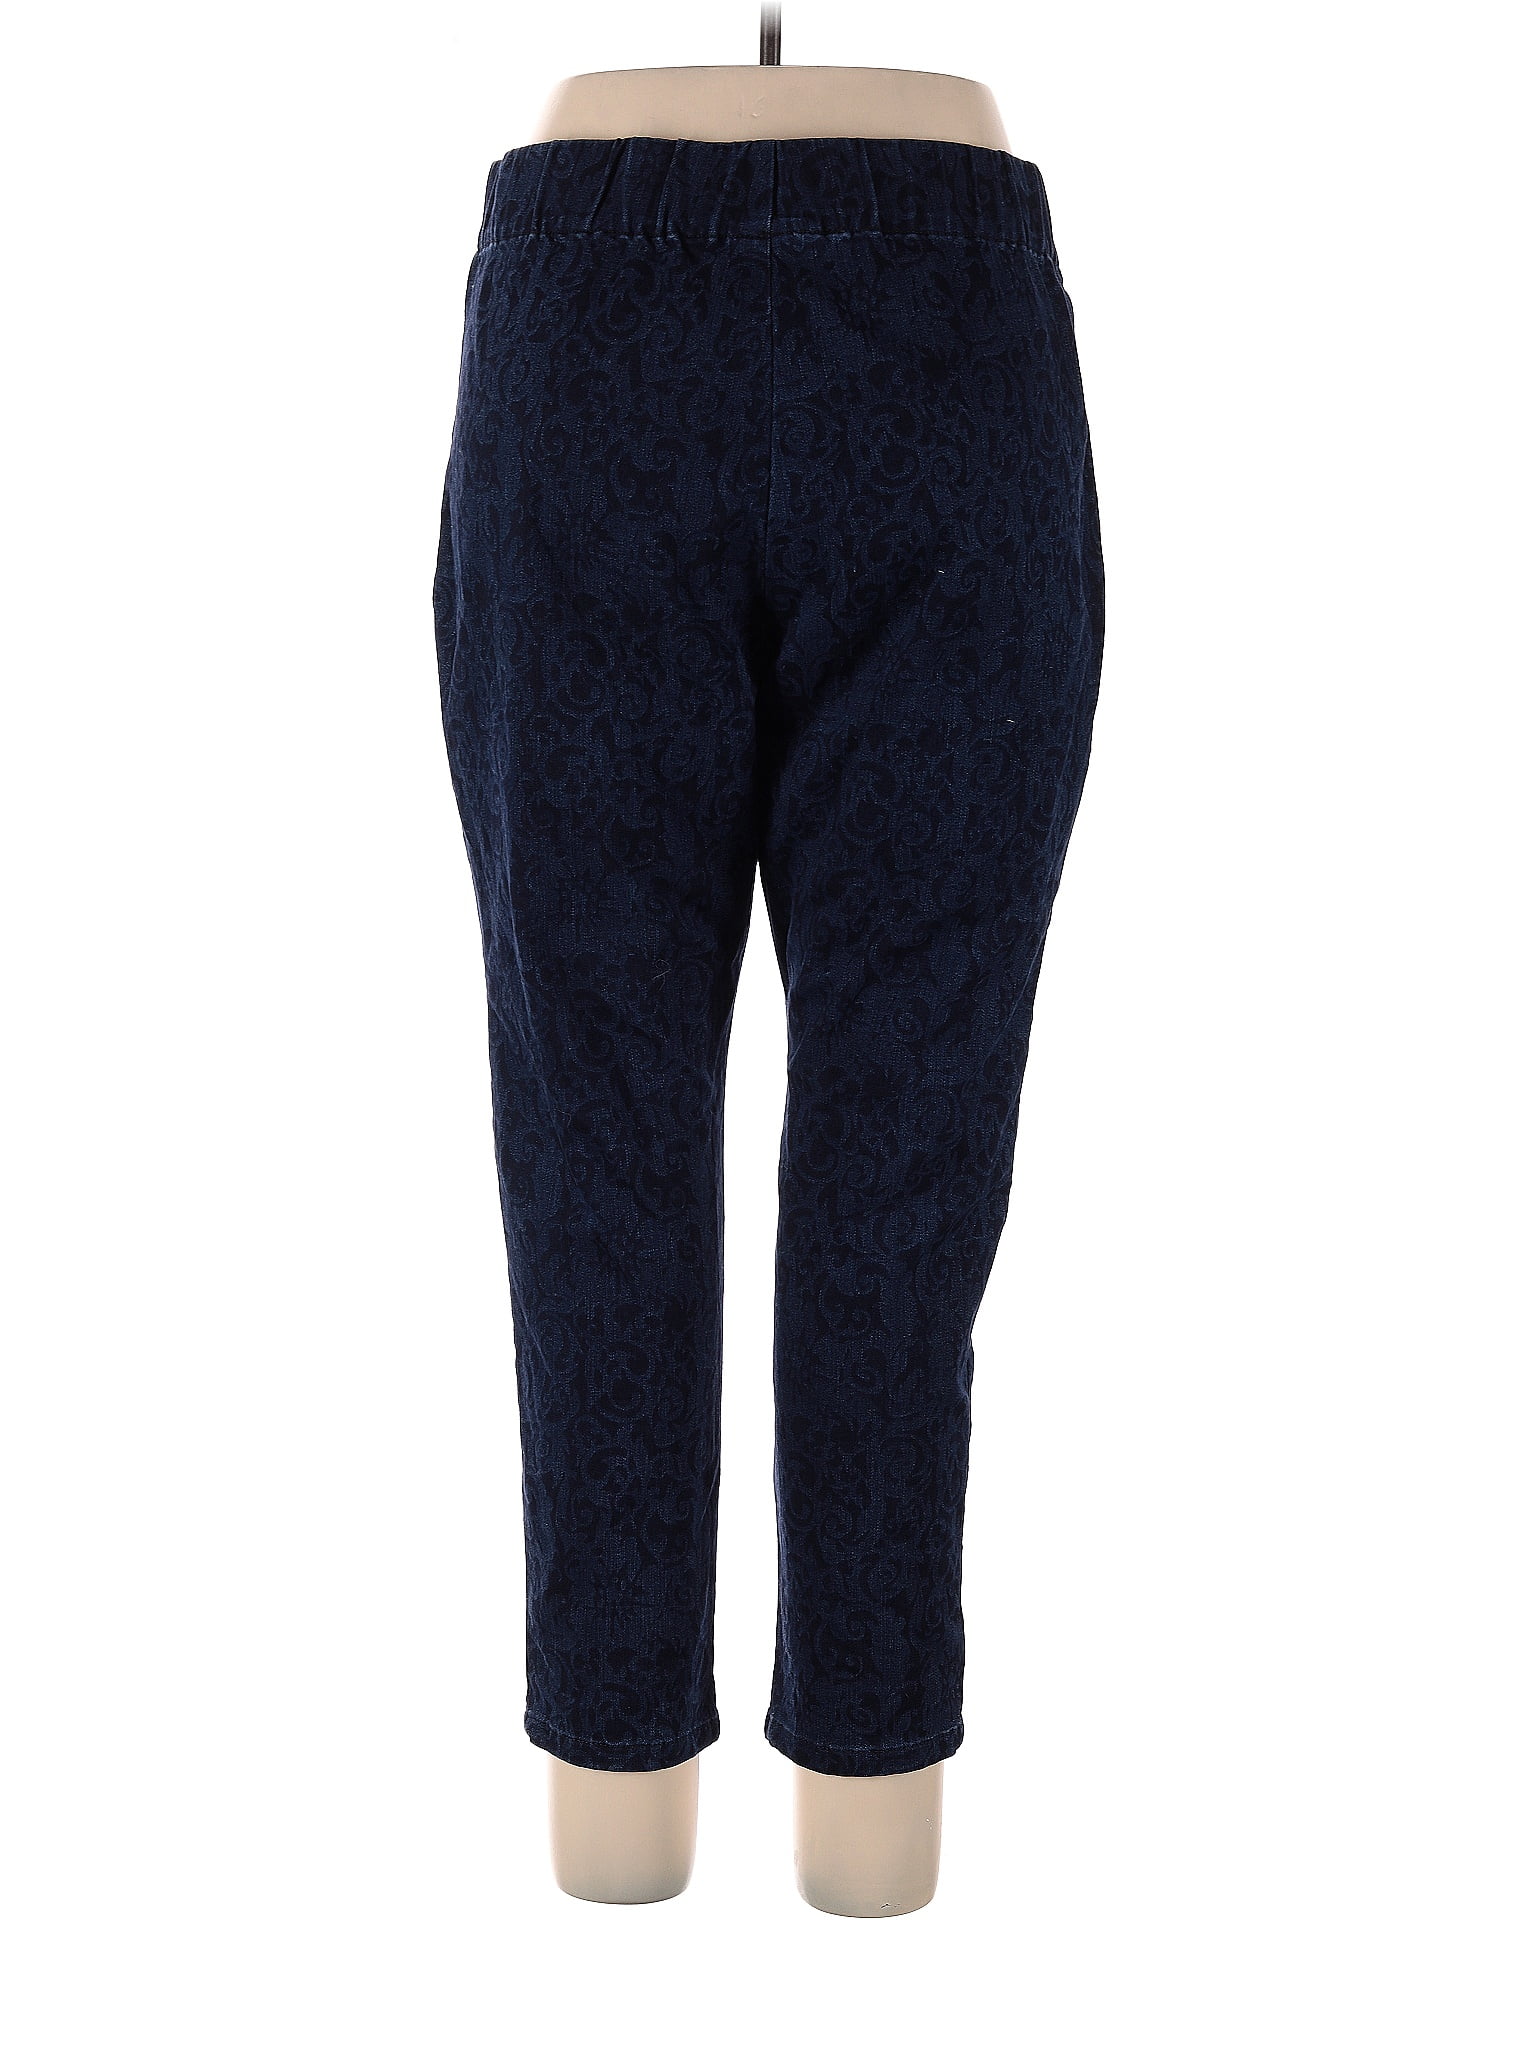 Soft Surroundings Leopard Print Blue Casual Pants Size XL (Petite